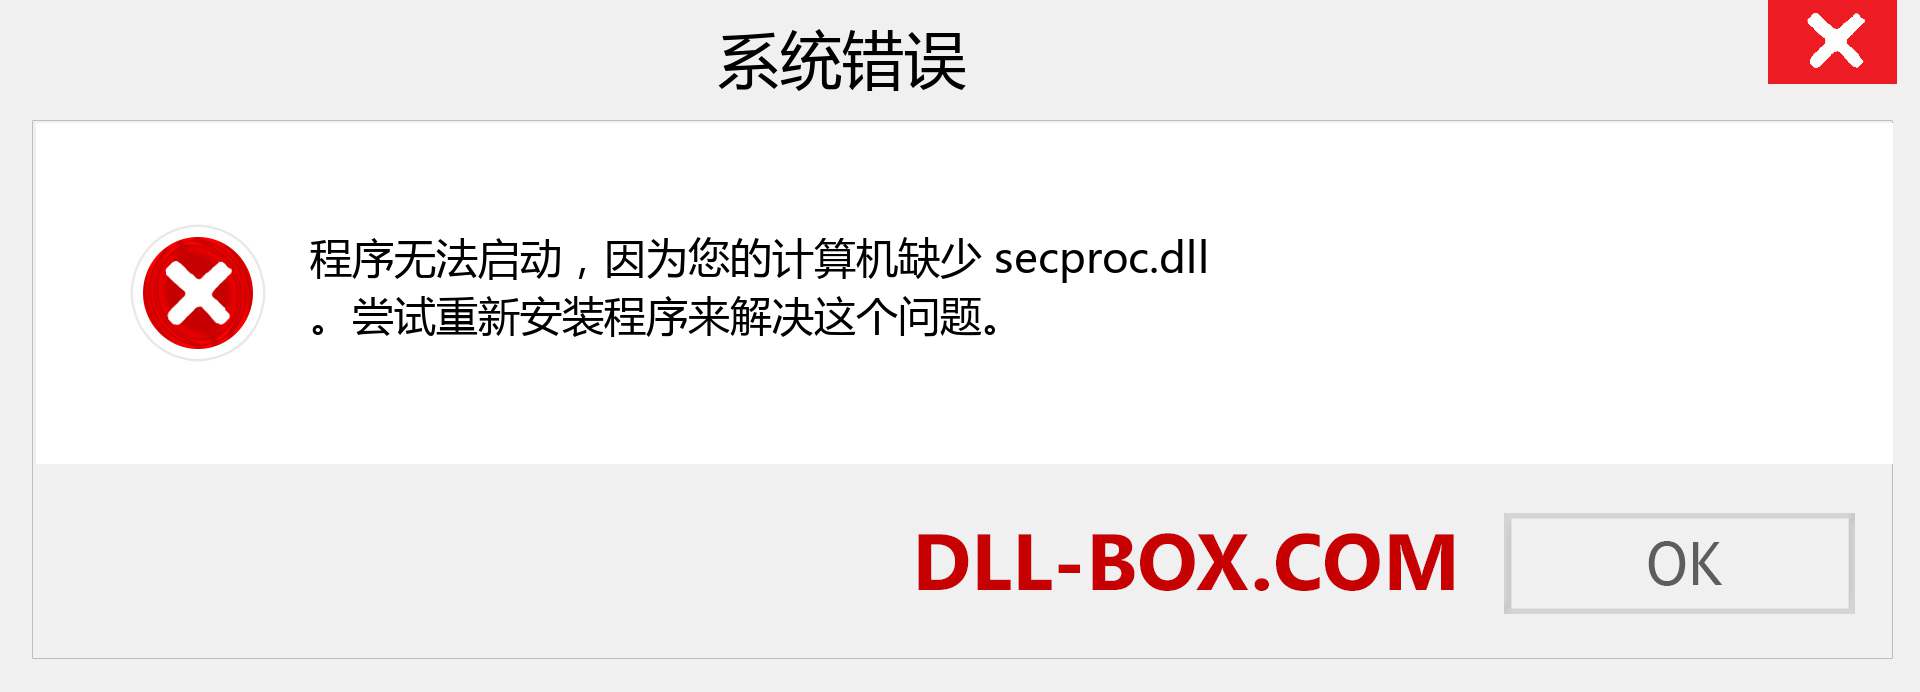 secproc.dll 文件丢失？。 适用于 Windows 7、8、10 的下载 - 修复 Windows、照片、图像上的 secproc dll 丢失错误